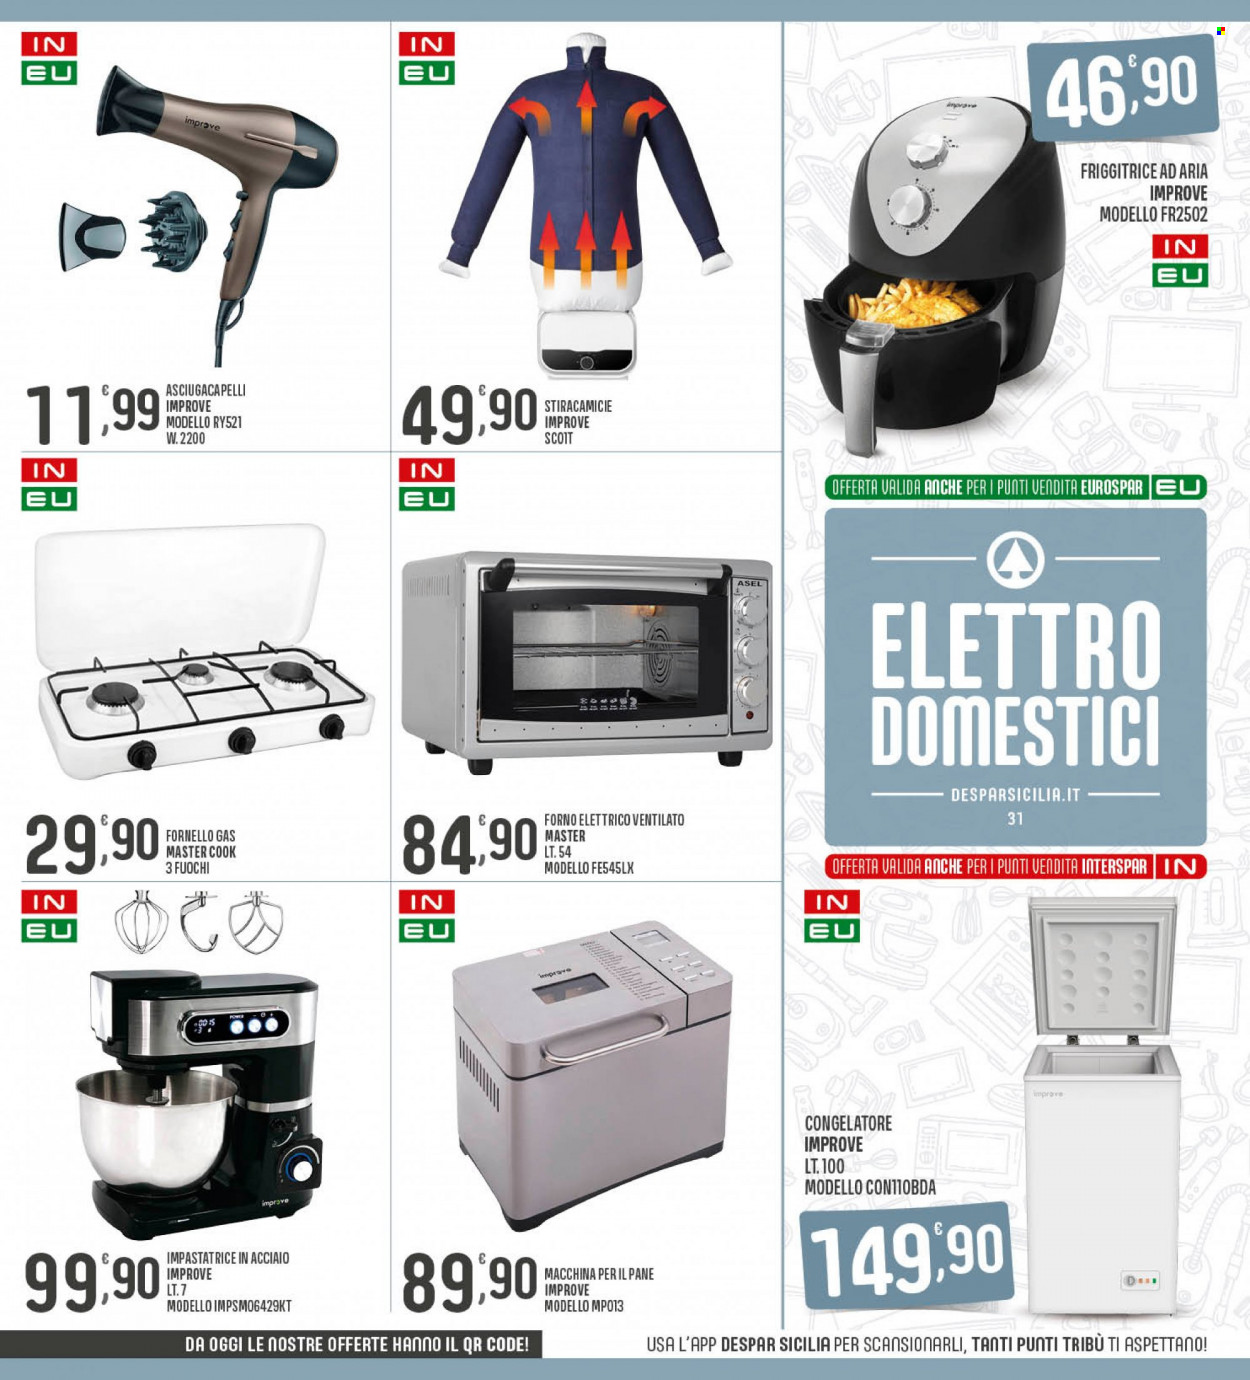 thumbnail - Volantino Interspar - 5/12/2022 - 14/12/2022 - Prodotti in offerta - pane, friggitrice, congelatore, forno, forno elettrico, fornello, impastatrice, friggitrice ad aria, macchina per il pane, asciugacapelli. Pagina 31.